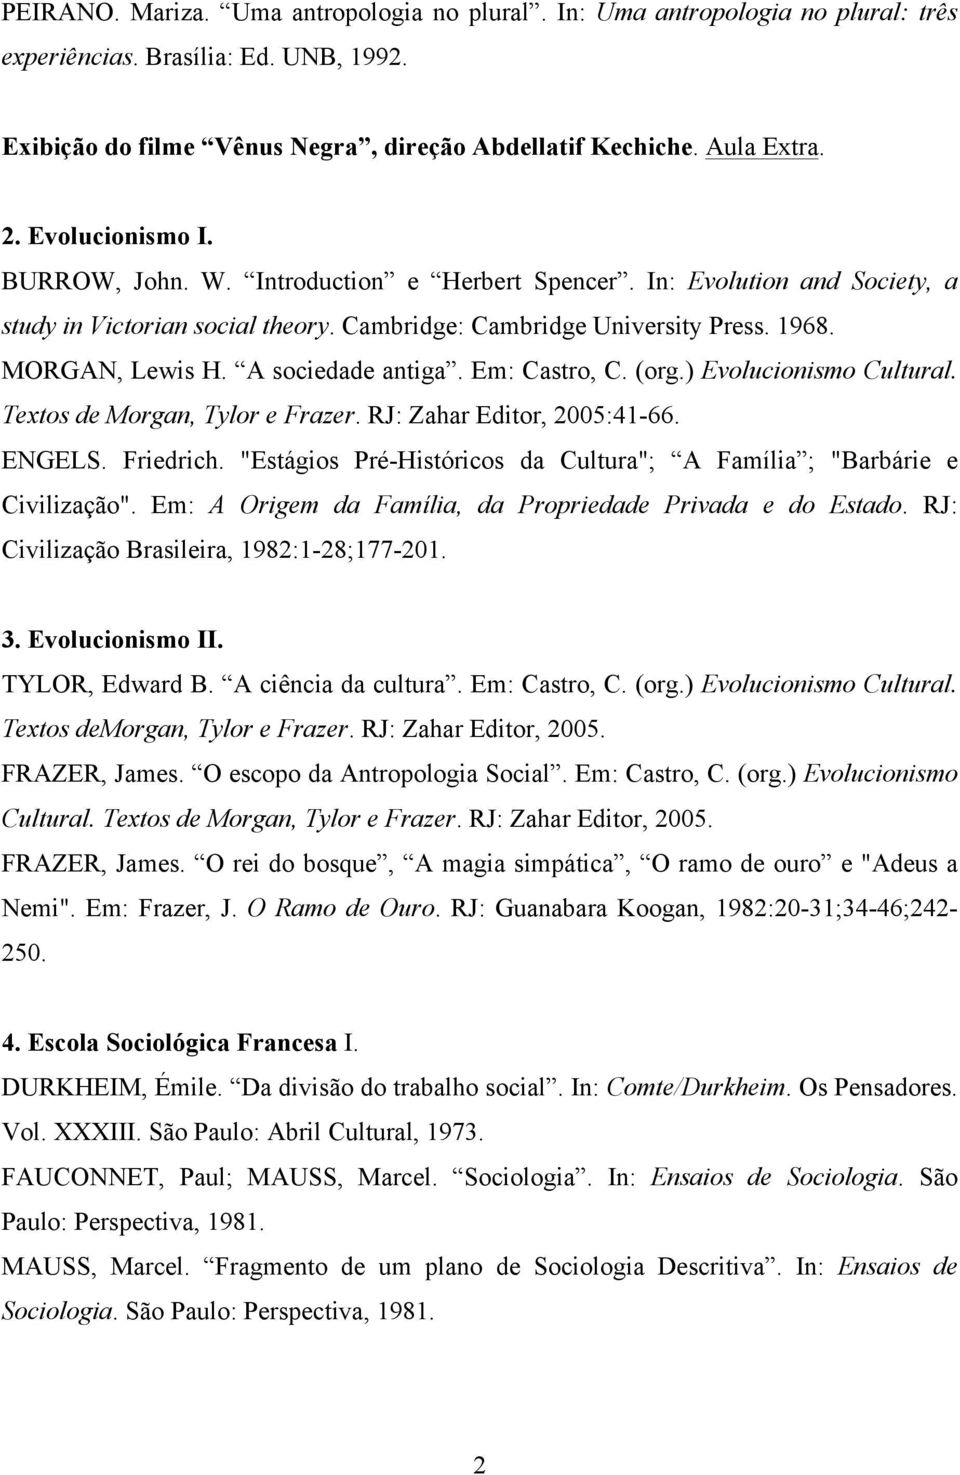 A sociedade antiga. Em: Castro, C. (org.) Evolucionismo Cultural. Textos de Morgan, Tylor e Frazer. RJ: Zahar Editor, 2005:41-66. ENGELS. Friedrich.